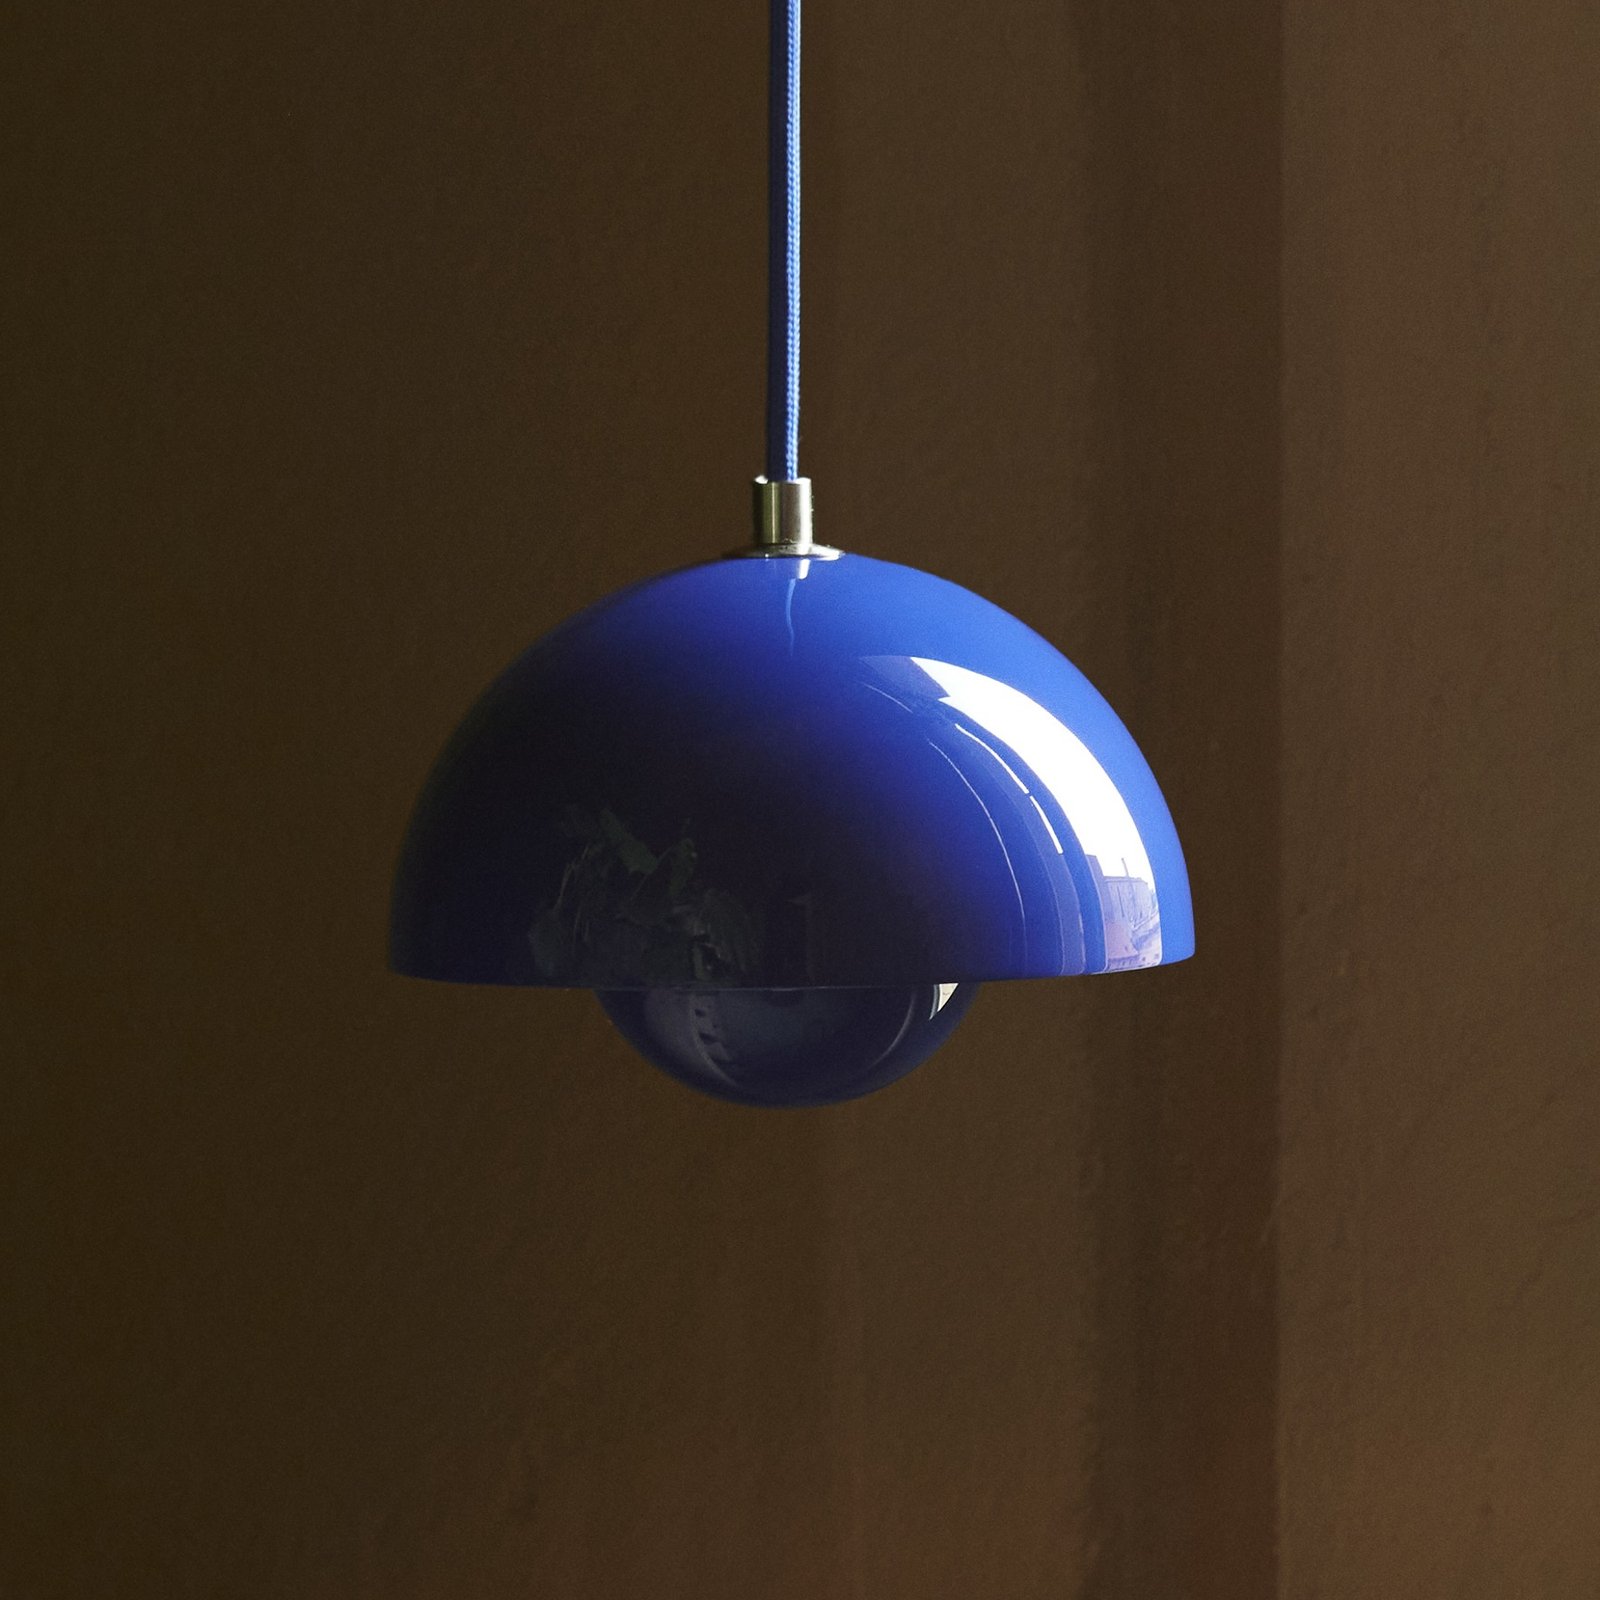 &Luminária suspensa Tradição Flowerpot VP10, Ø 16 cm, azul cobalto